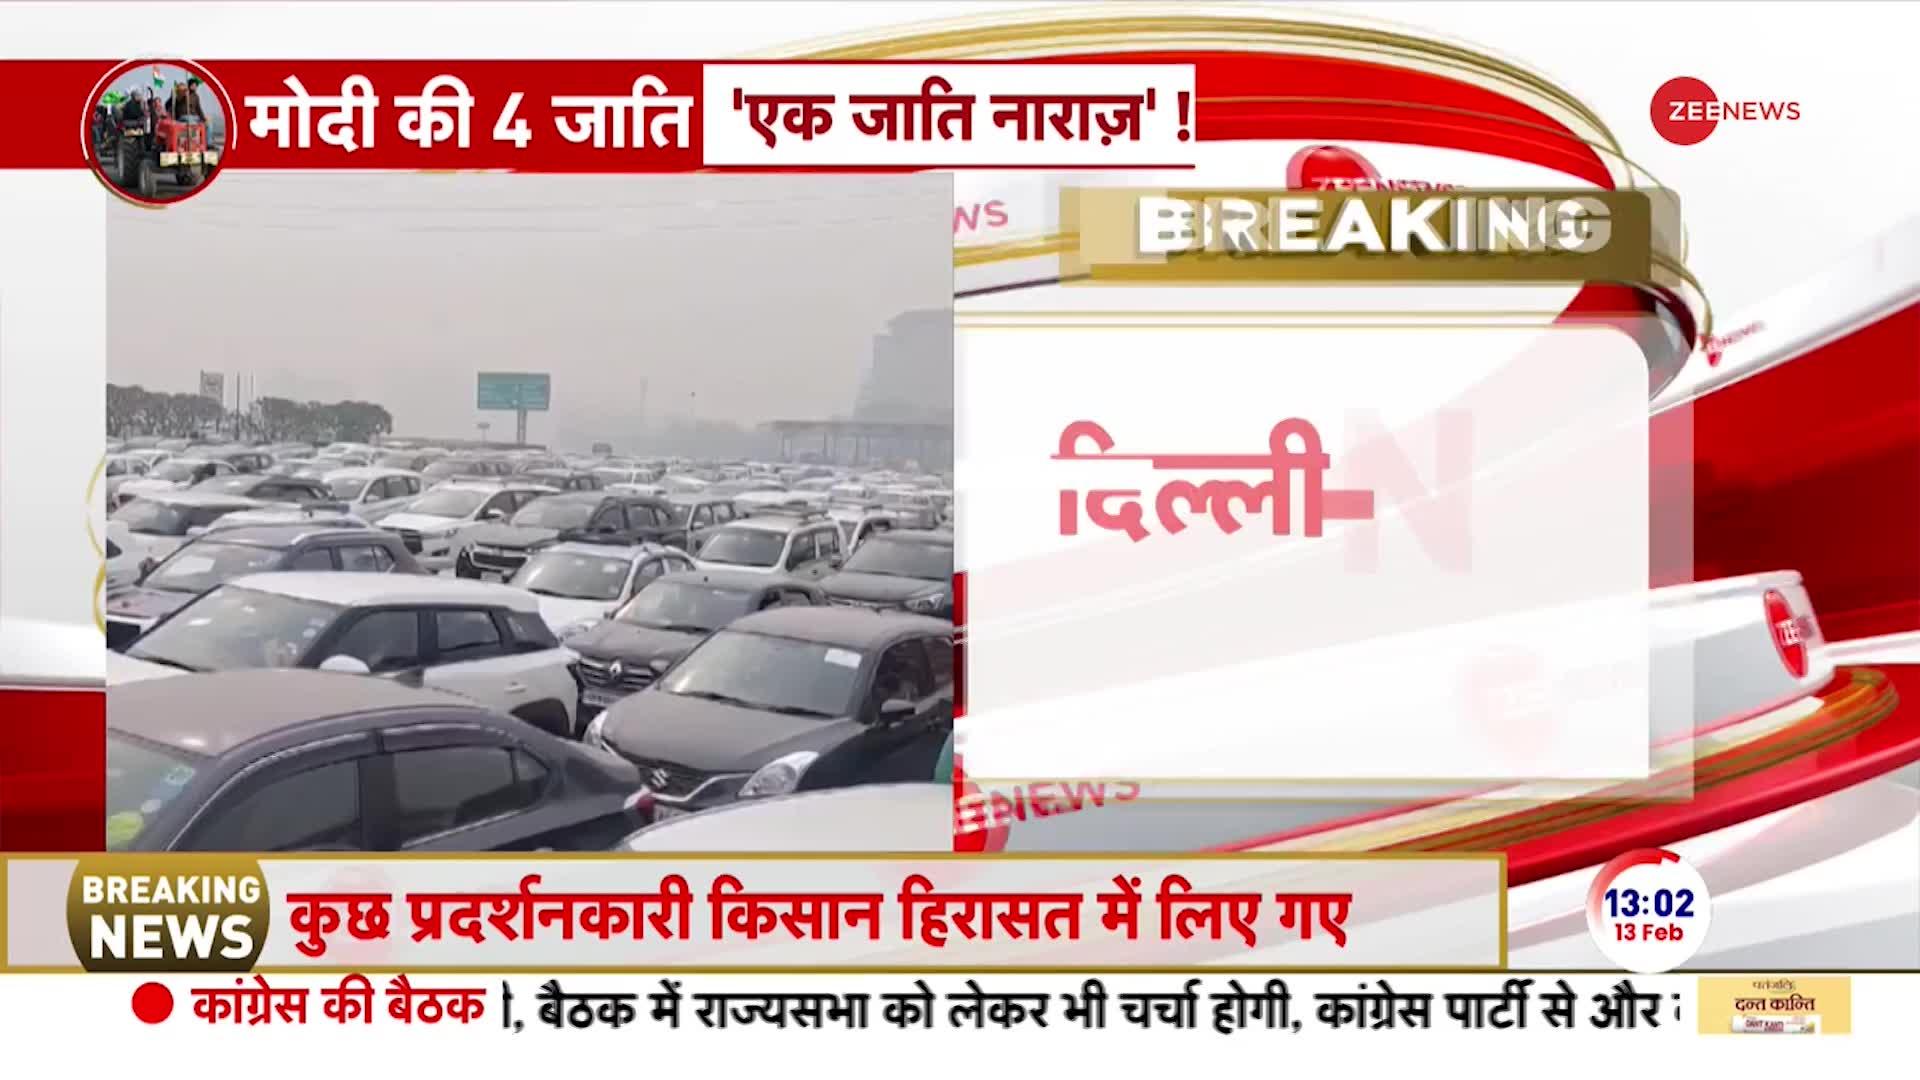 Breaking News: दिल्ली-NCR में लगा कई किलोमीटर लंबा जाम, सड़कों पर घंटों से खड़ी गाड़ियां | Kisan Andolan